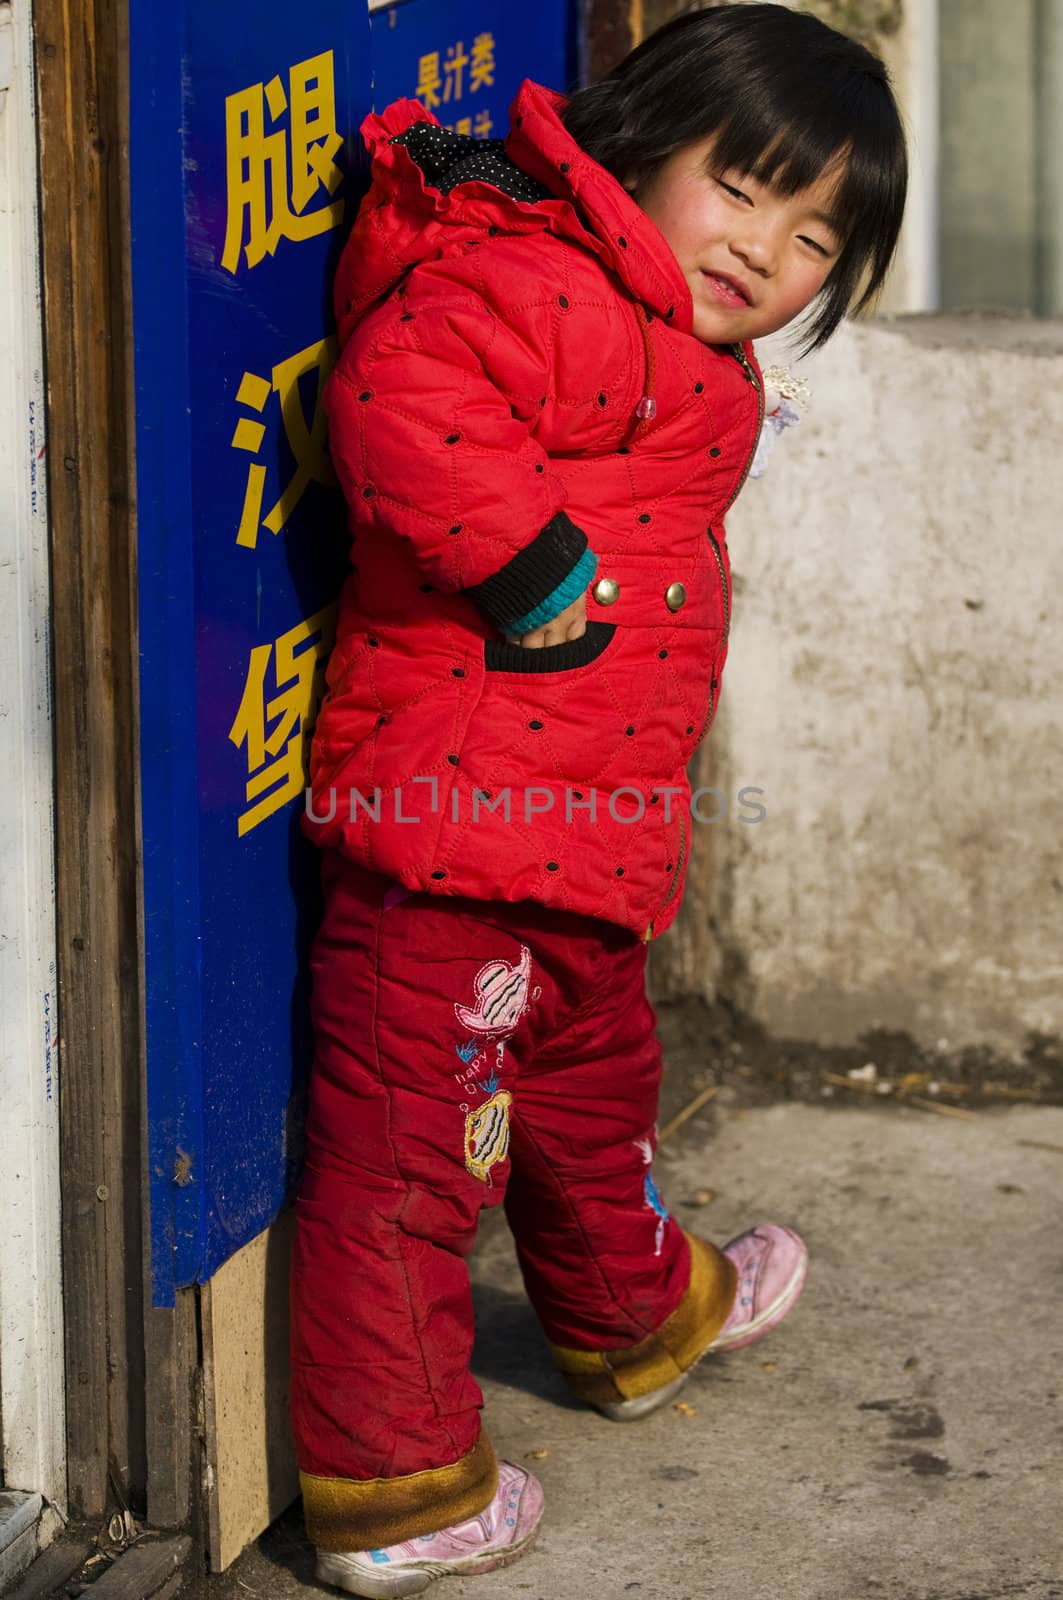 Chinese child by kobby_dagan